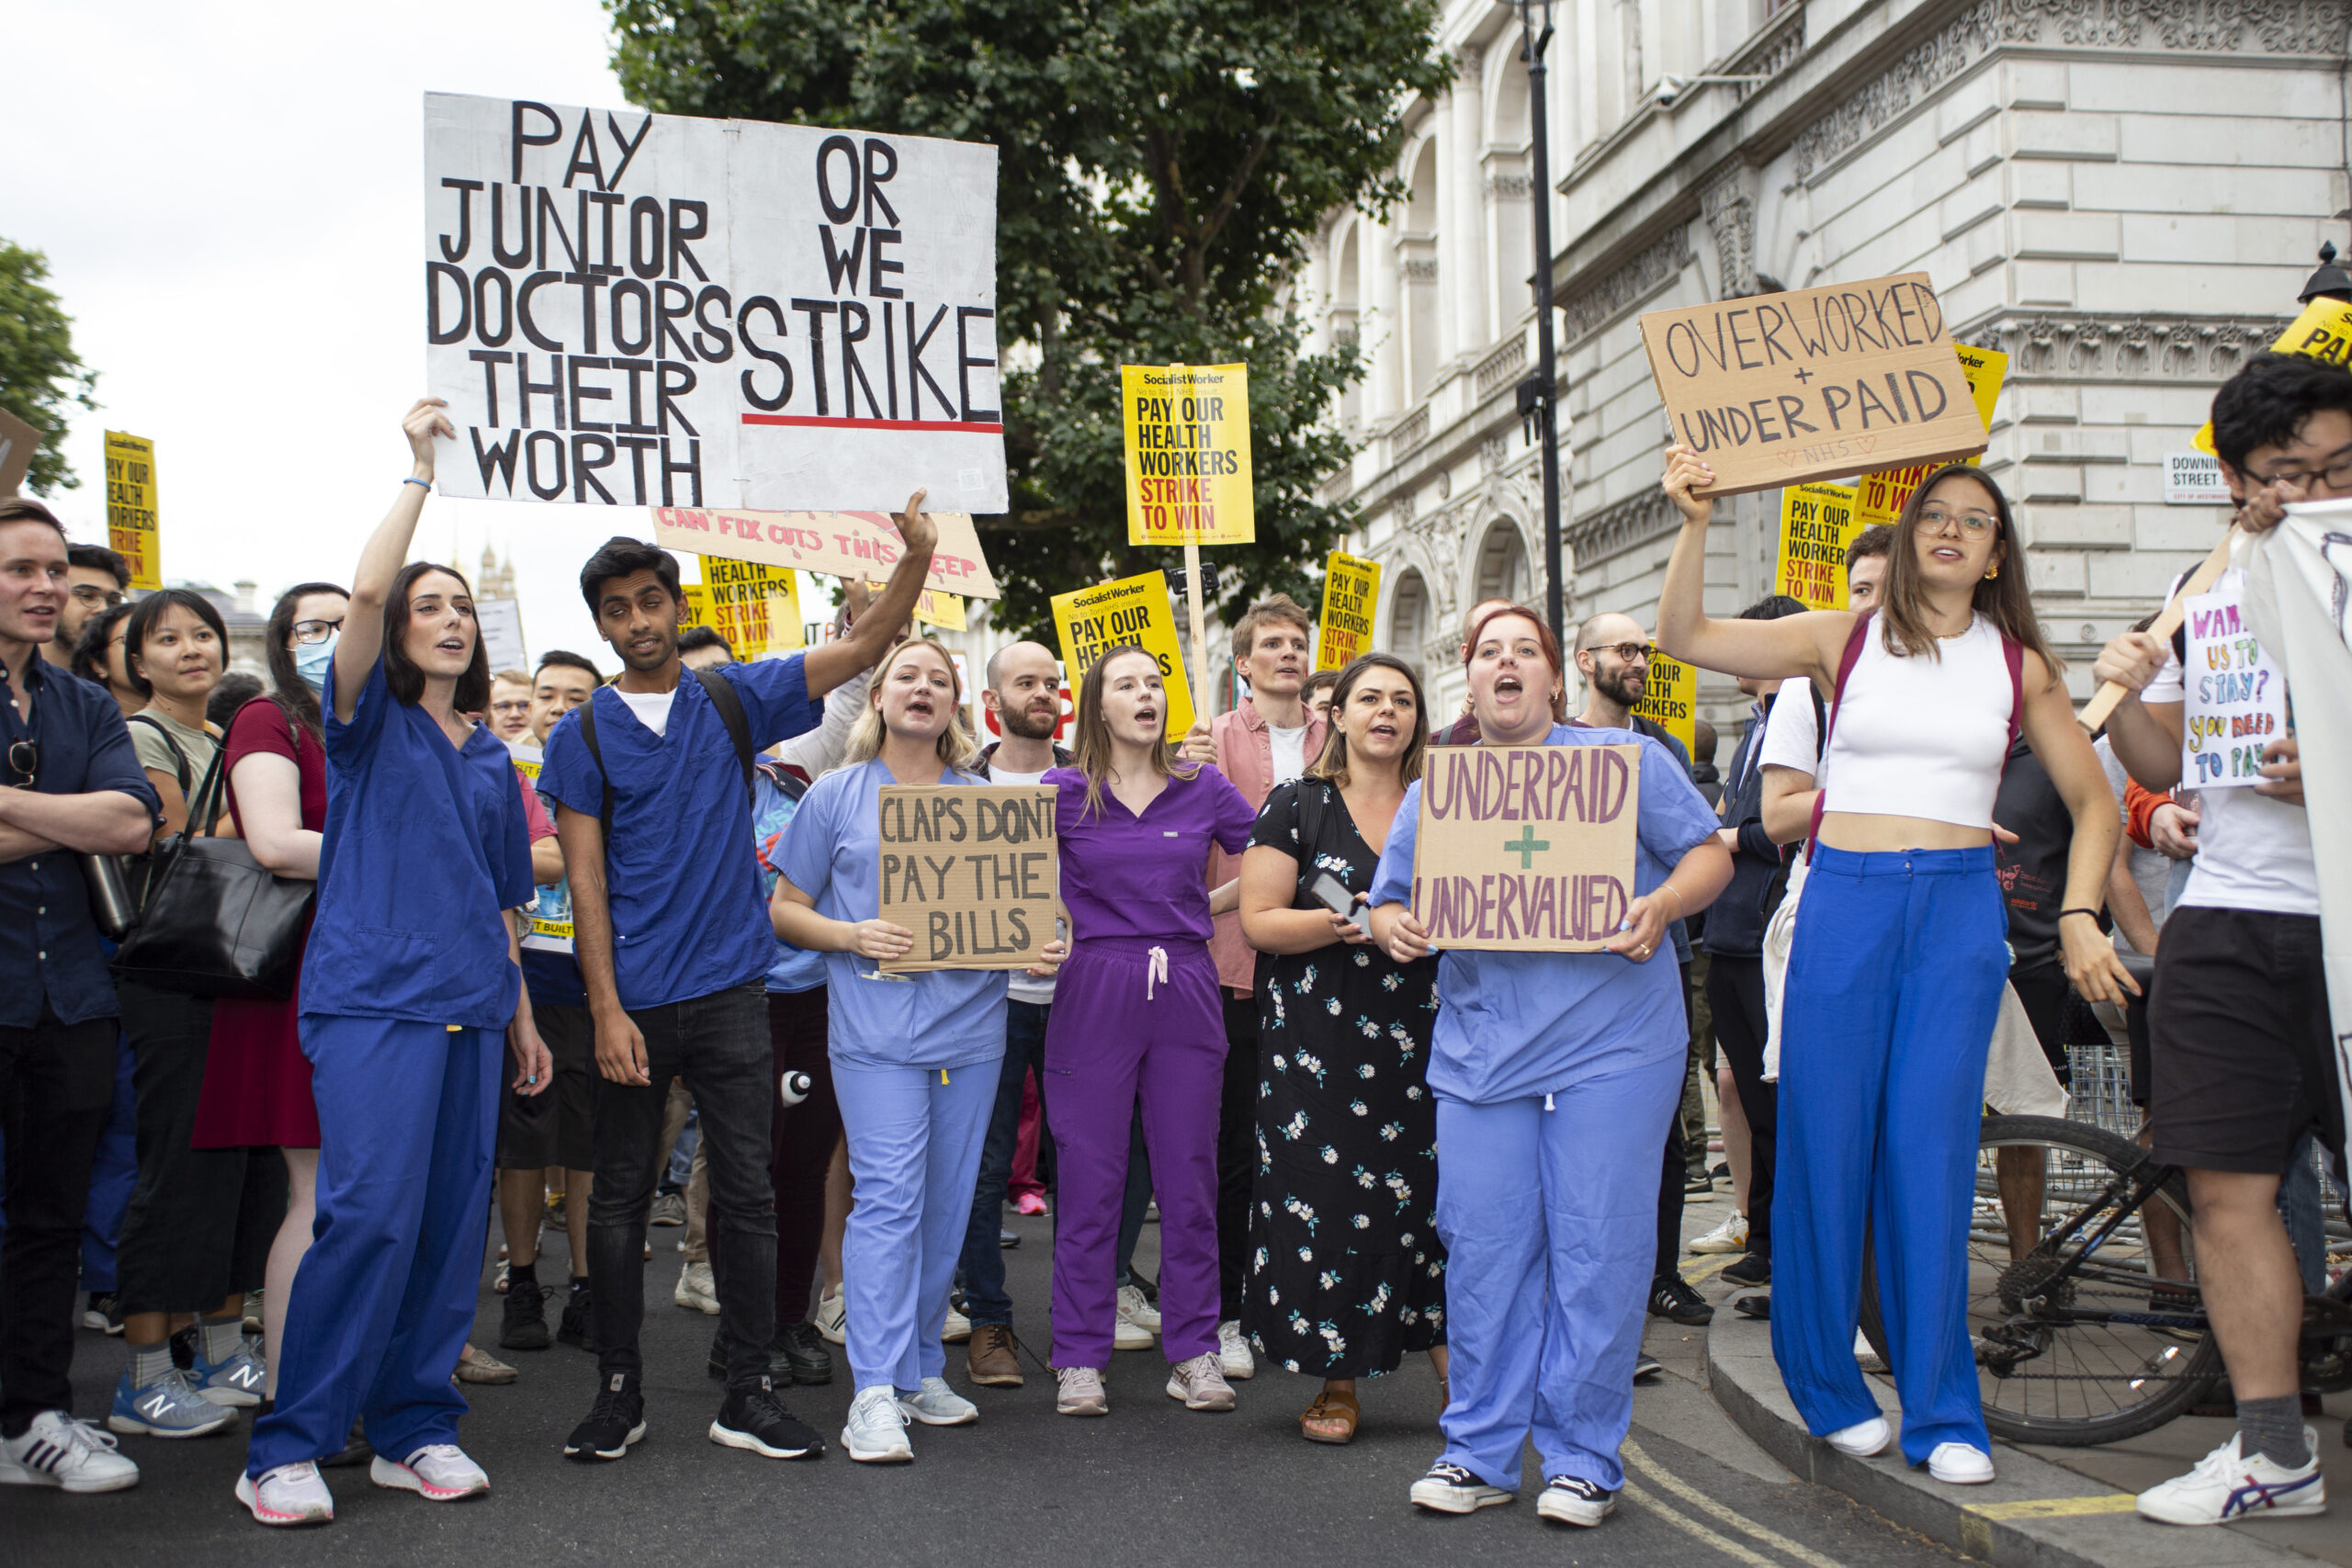 الأطباء العاملين في إنجلترا يضربون عن العمل بسبب الخلاف المطول مع الوزراء حول الأجور والظروف